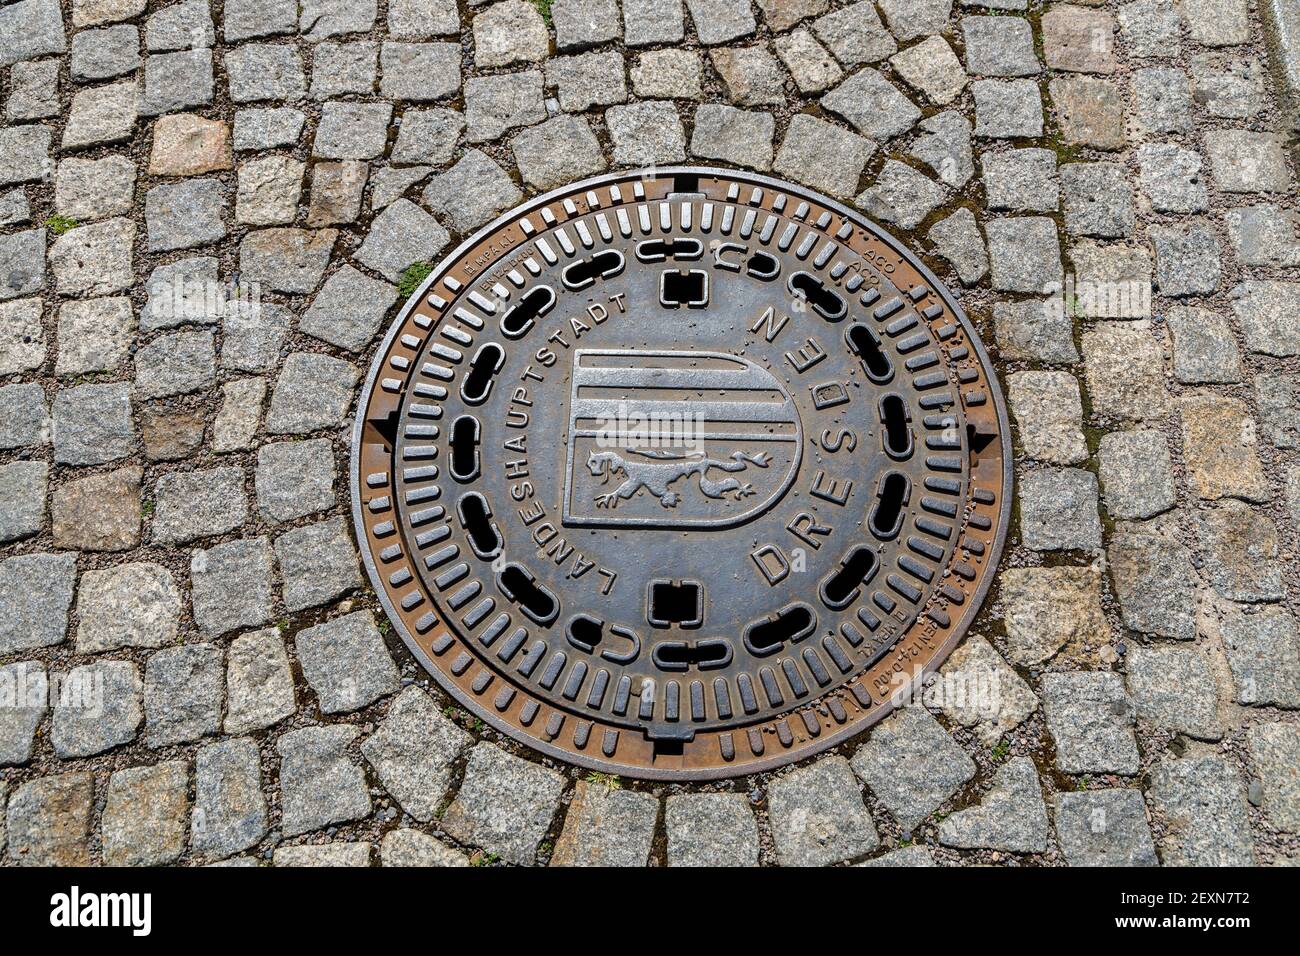 Dresde, Allemagne, 18 avril 2018 : couverture de trou d'homme en fonte du réseau d'égouts de Dresde. Banque D'Images